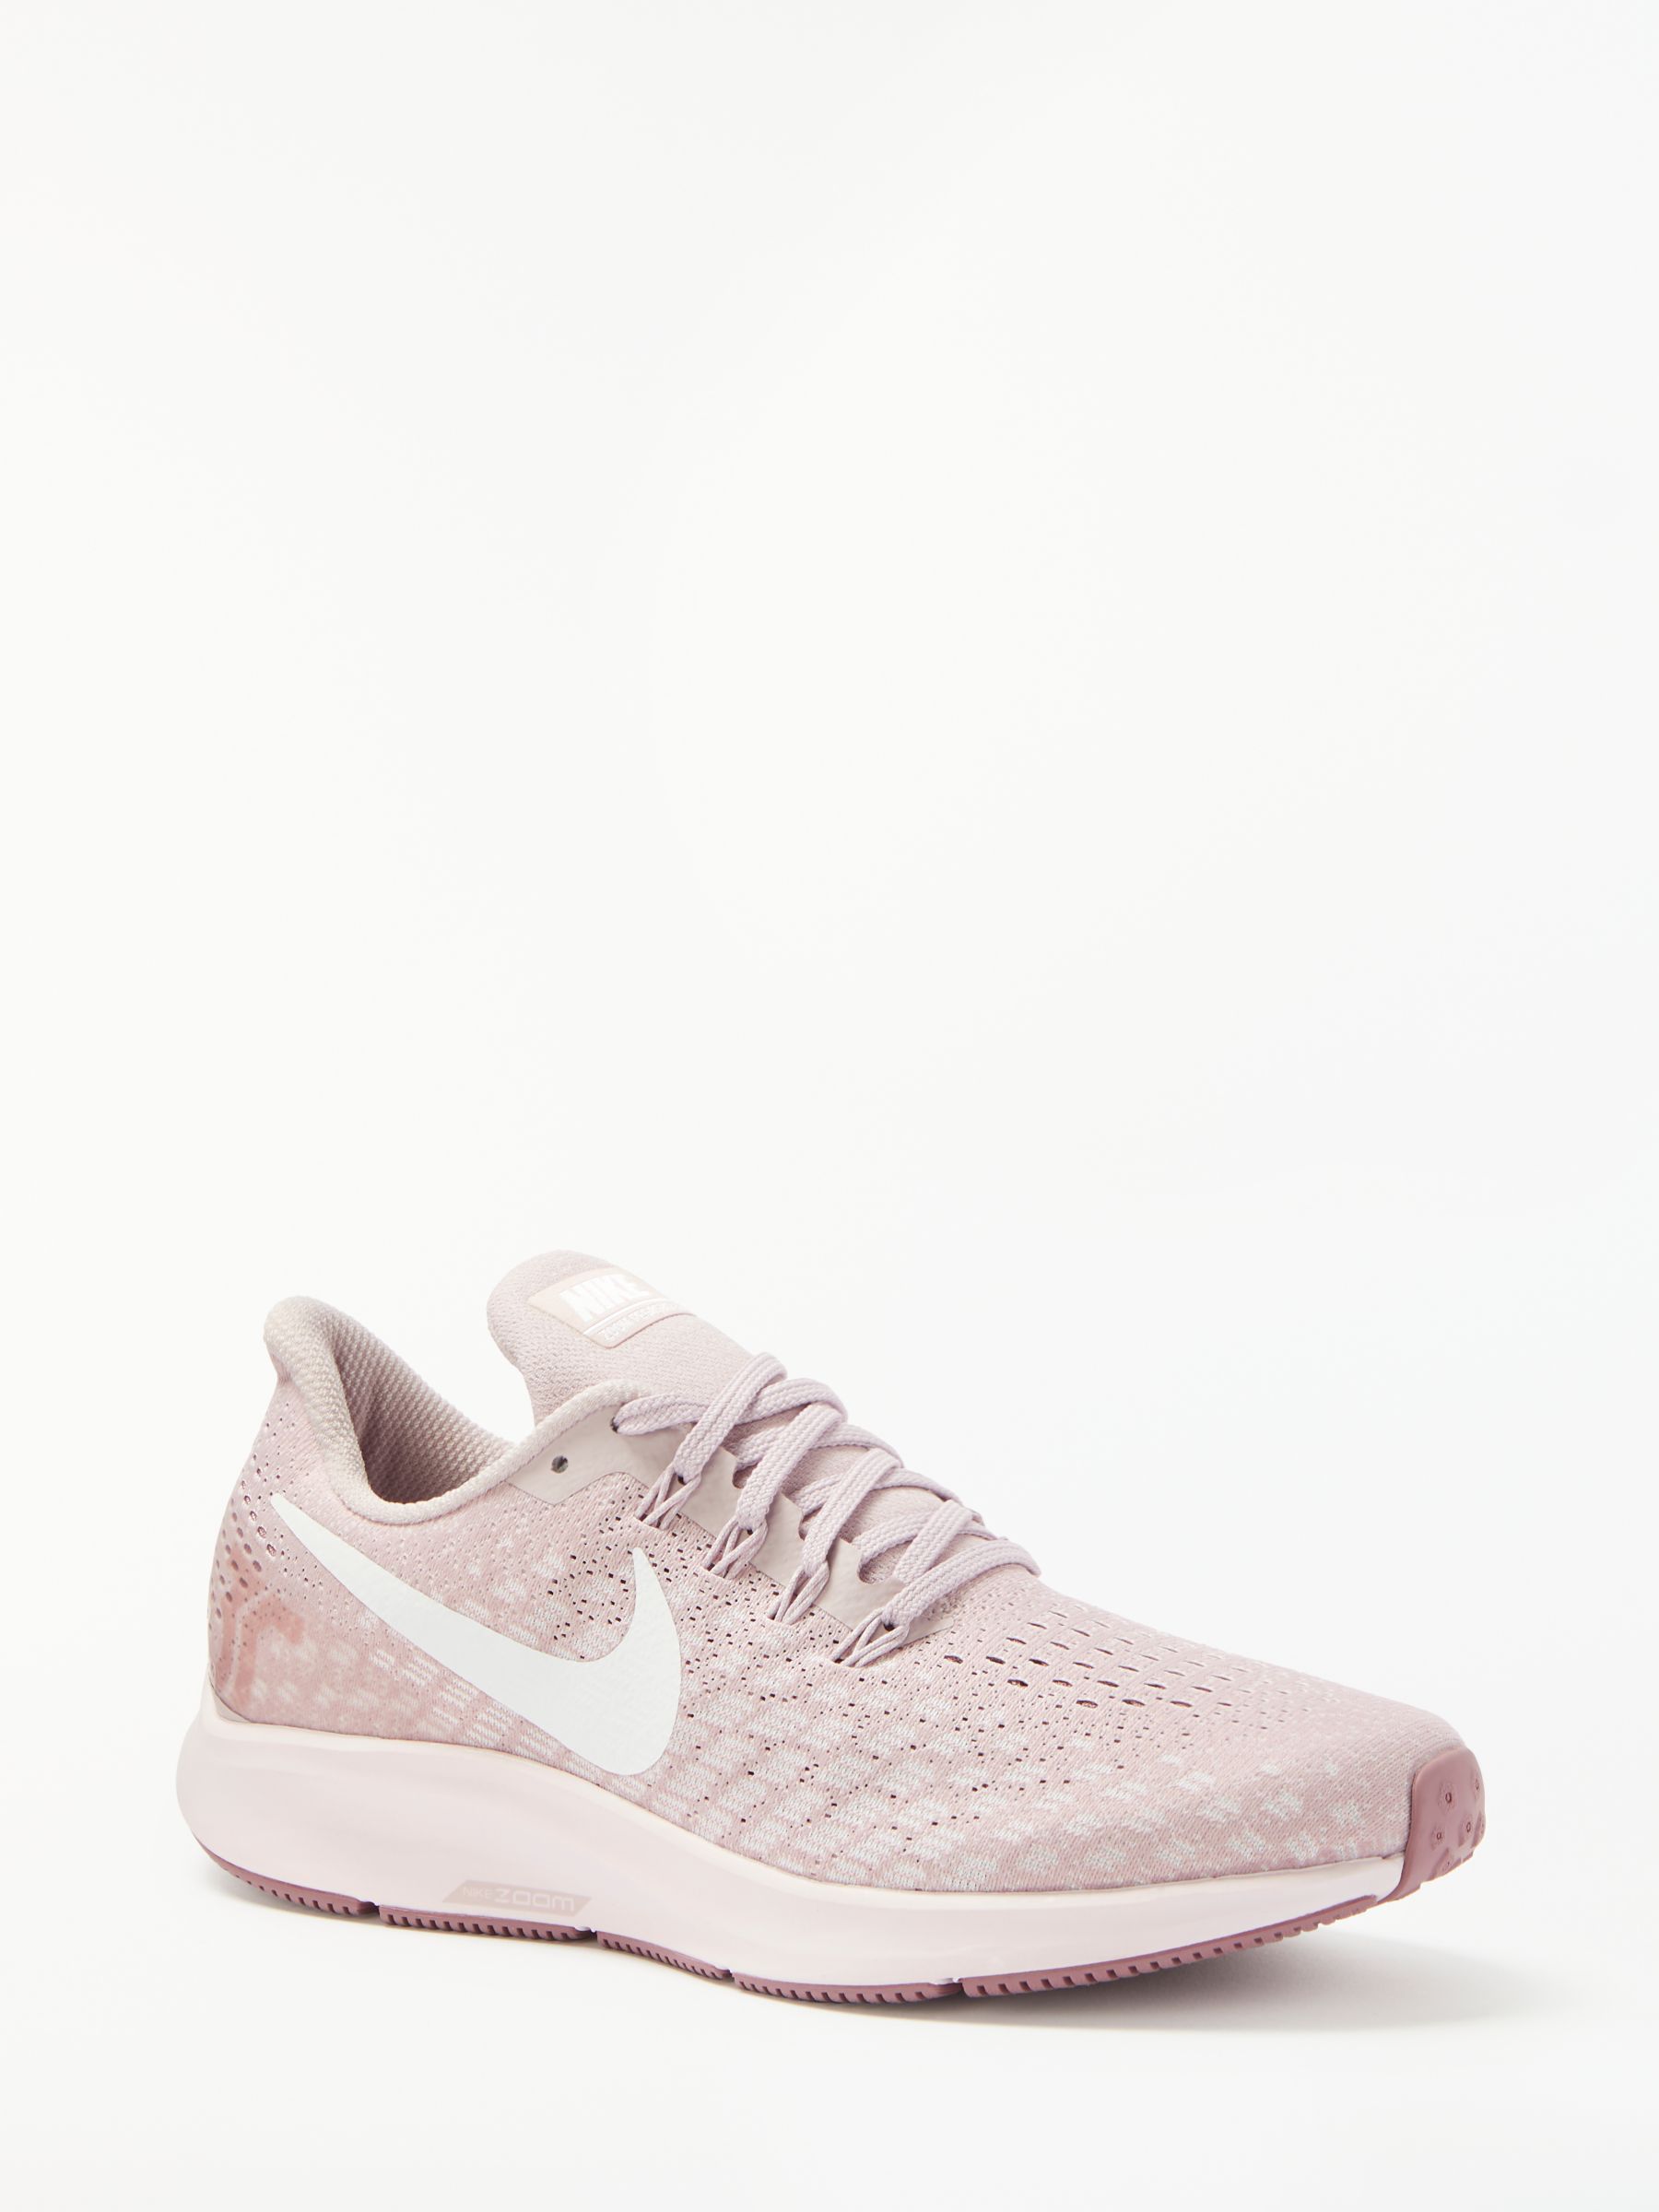 Nike Air Zoom Pegasus 35 Women's Running Shoes, Particle Rose/White at John  Lewis \u0026 Partners